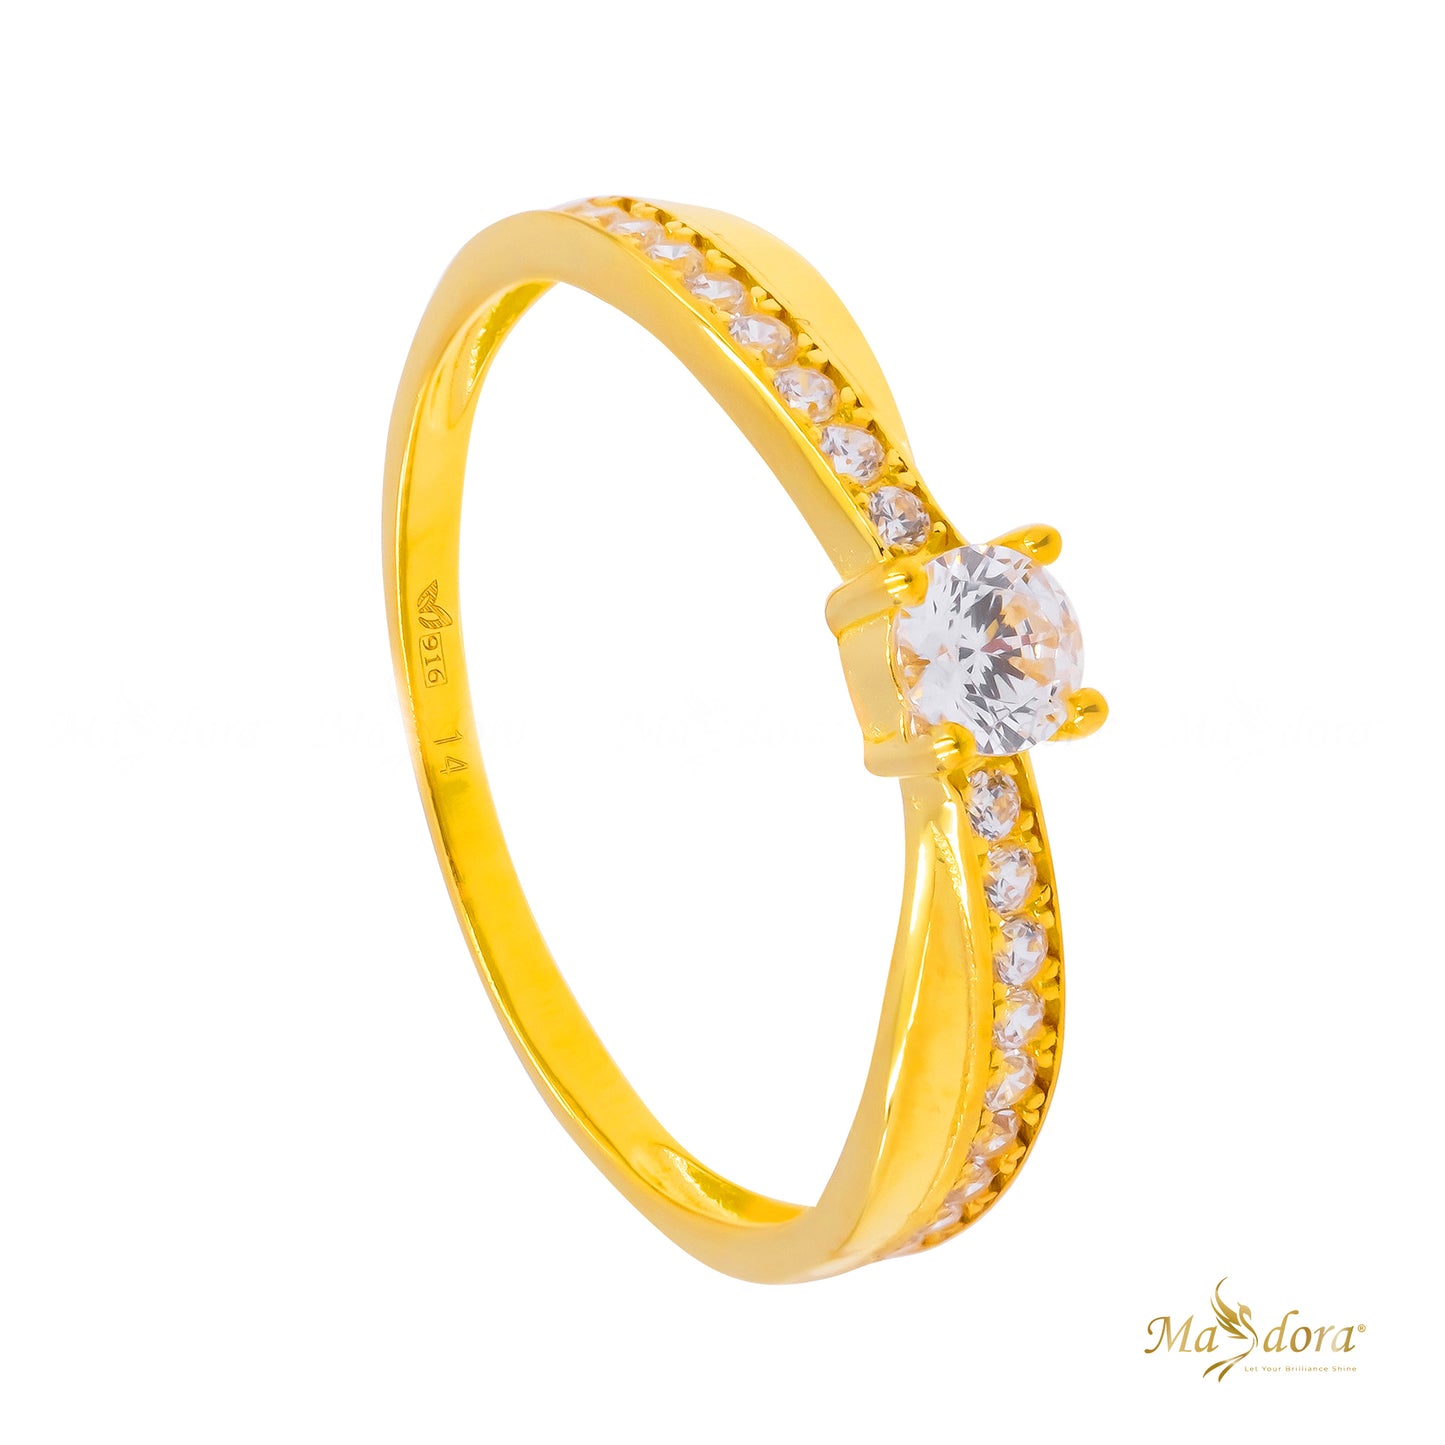 Masdora Sparkling Solitaire Ring Emas 916